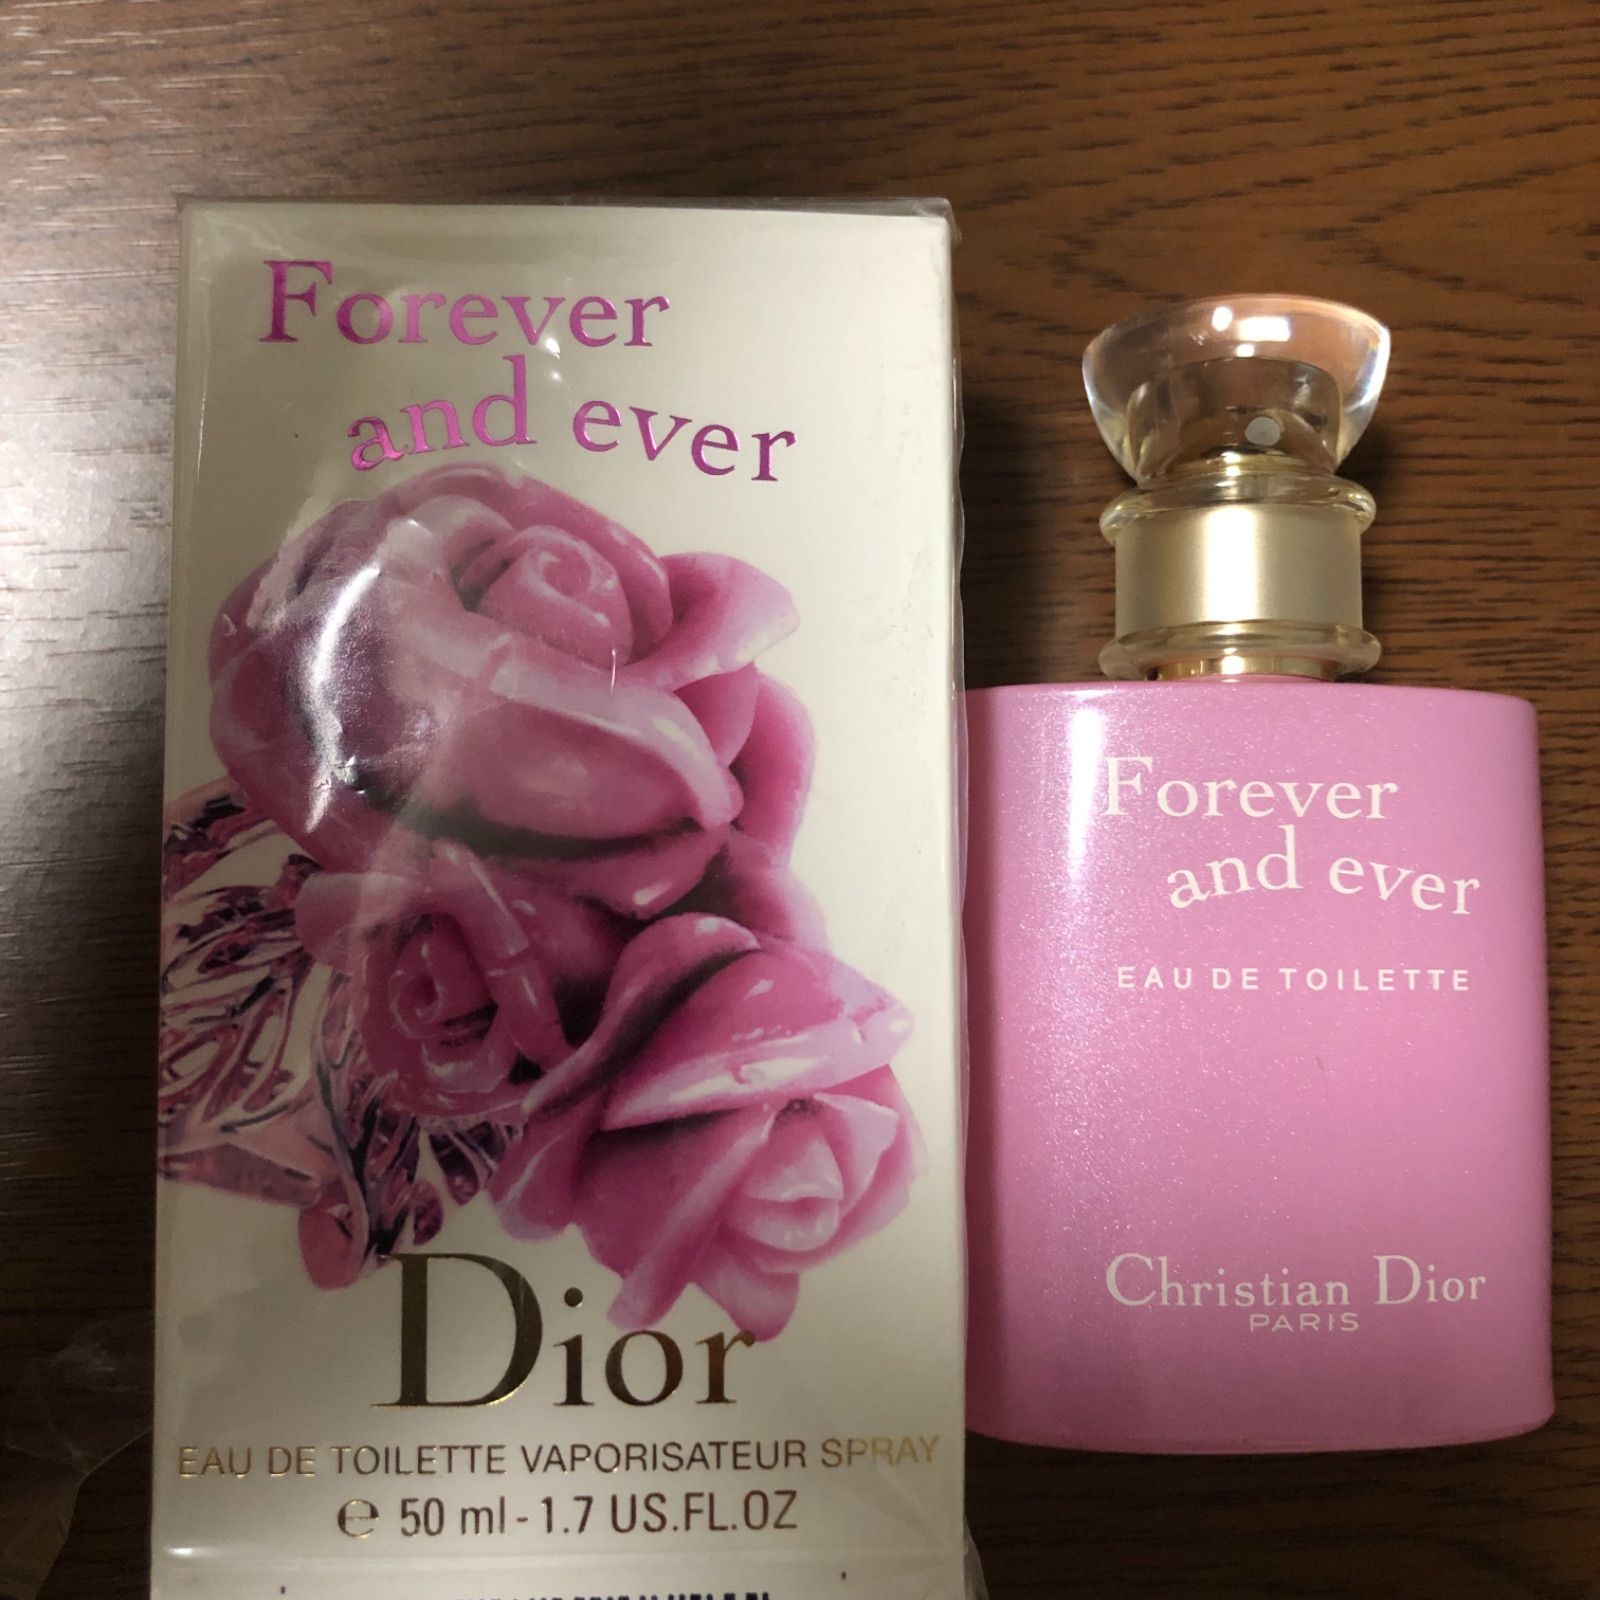 ディオール 香水 Christian Dior Forever and ever-